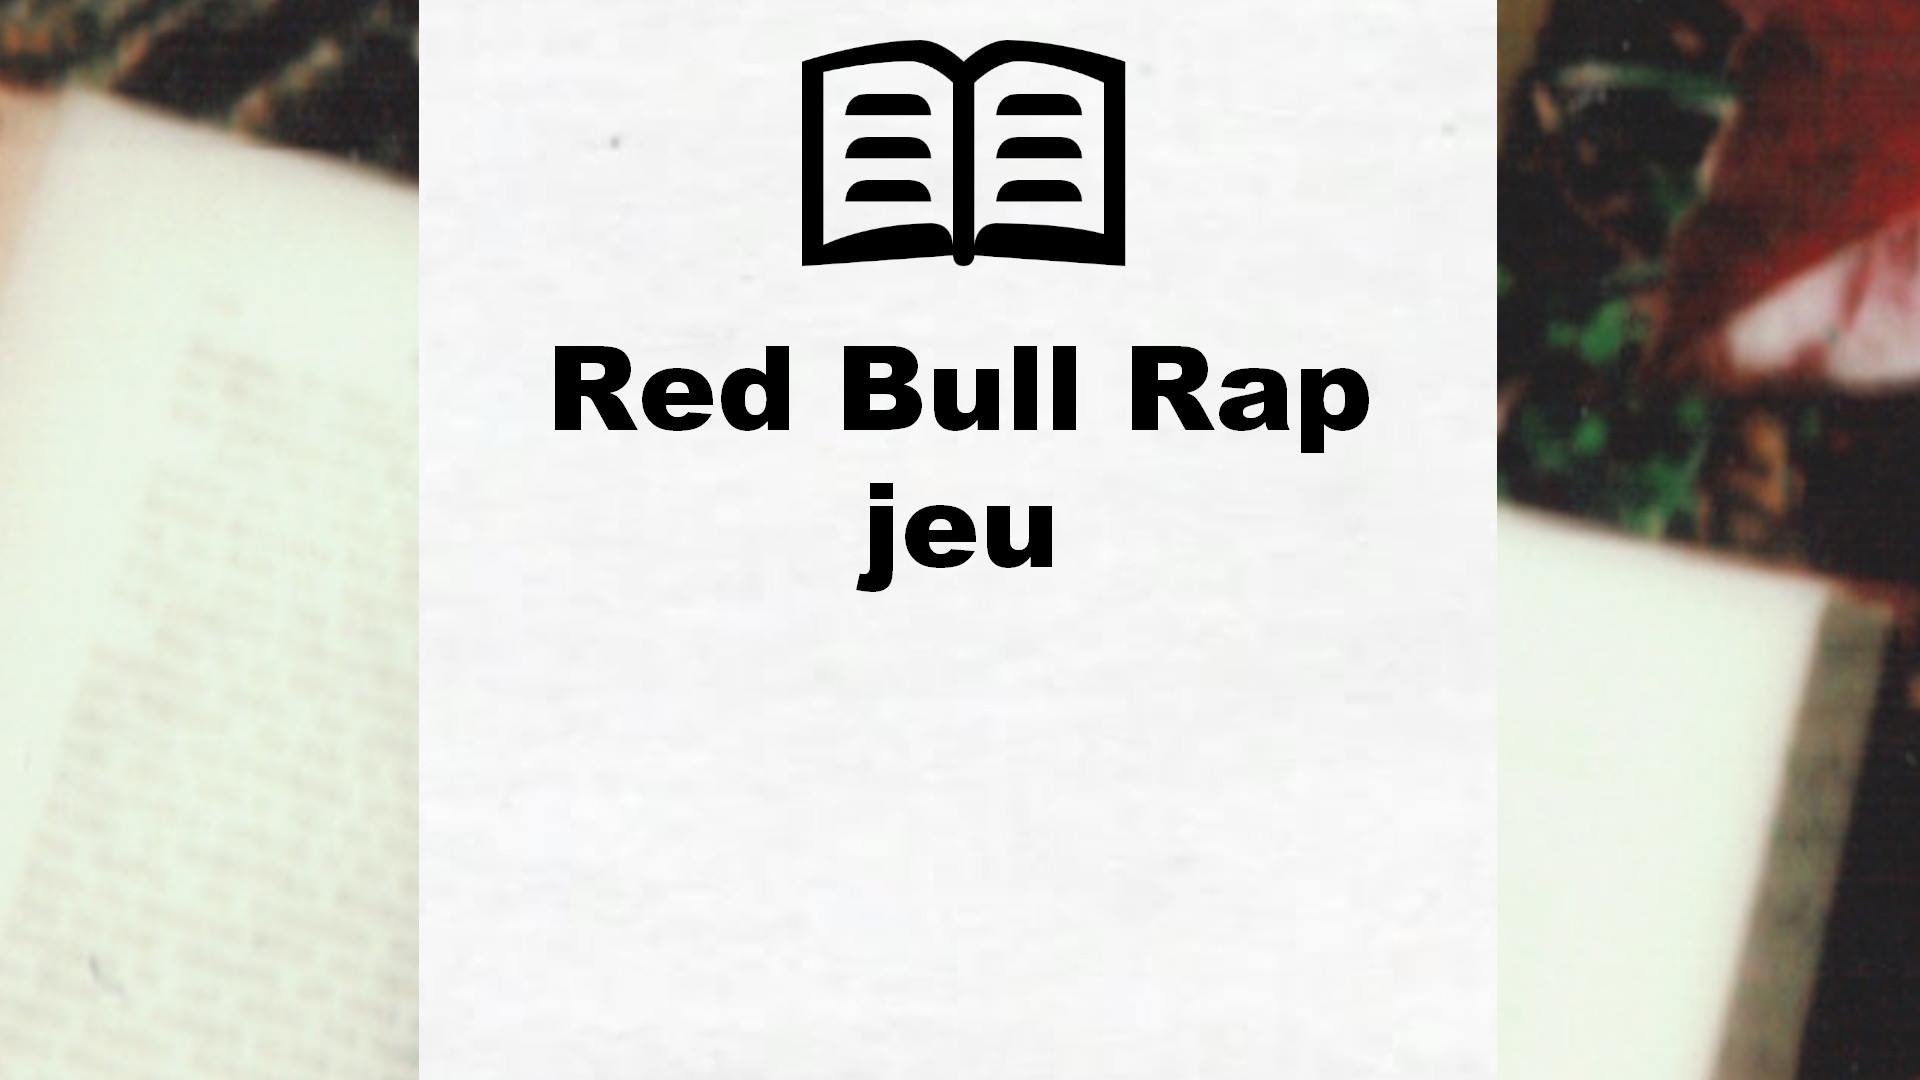 Red Bull Rap jeu – Critique